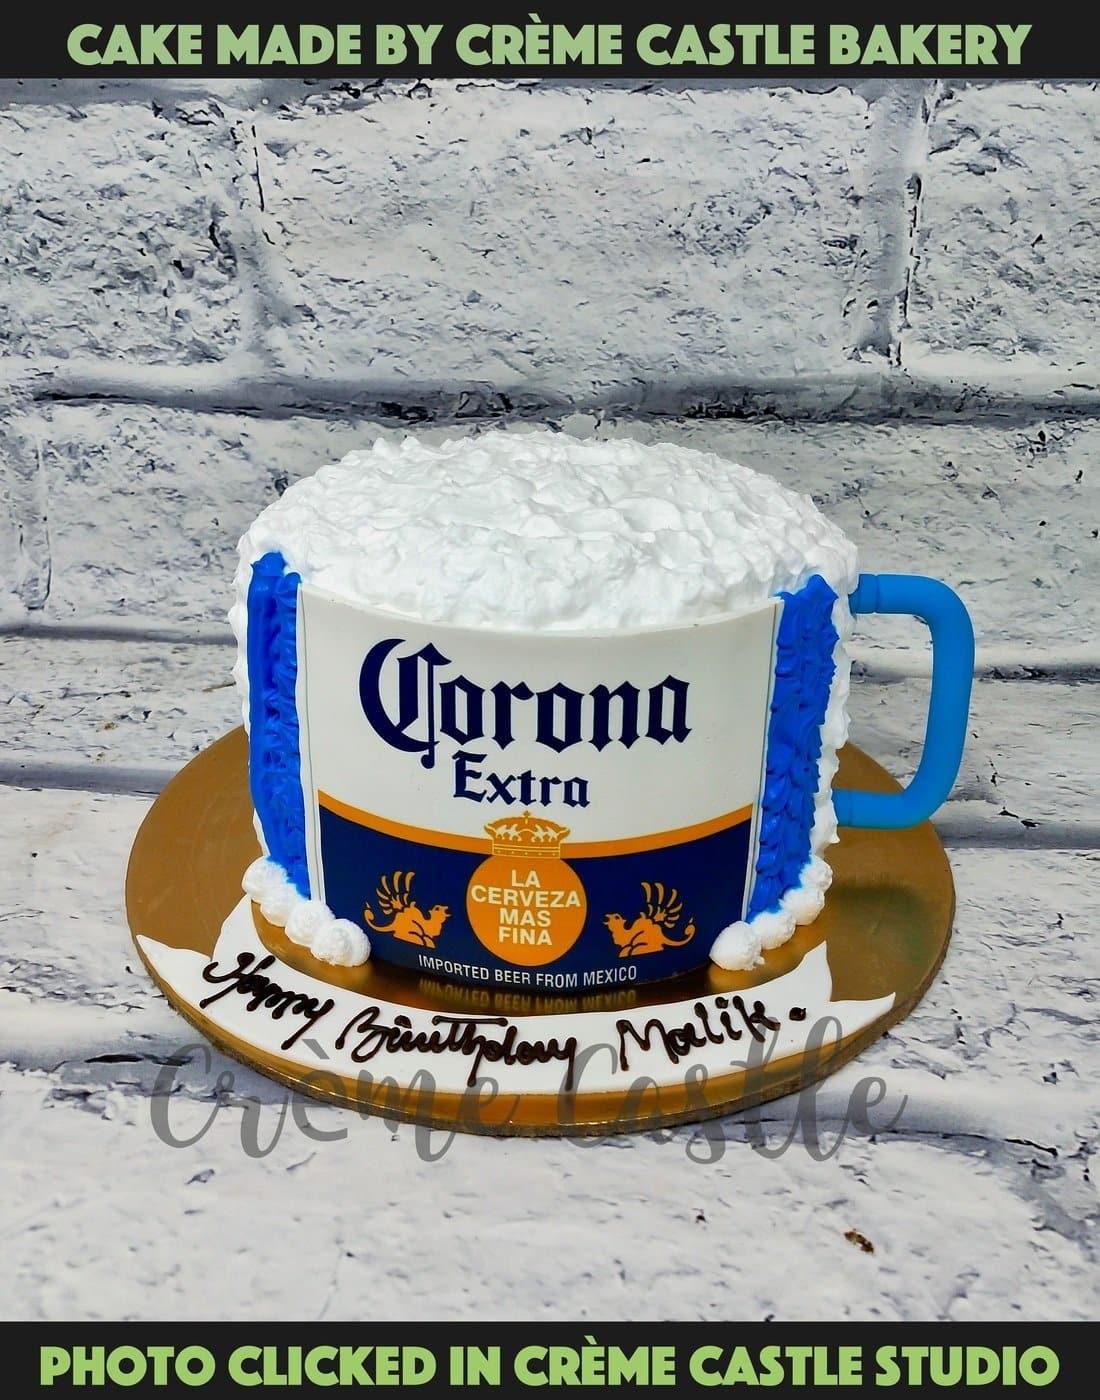 Corona Beer Cake - Creme Castle